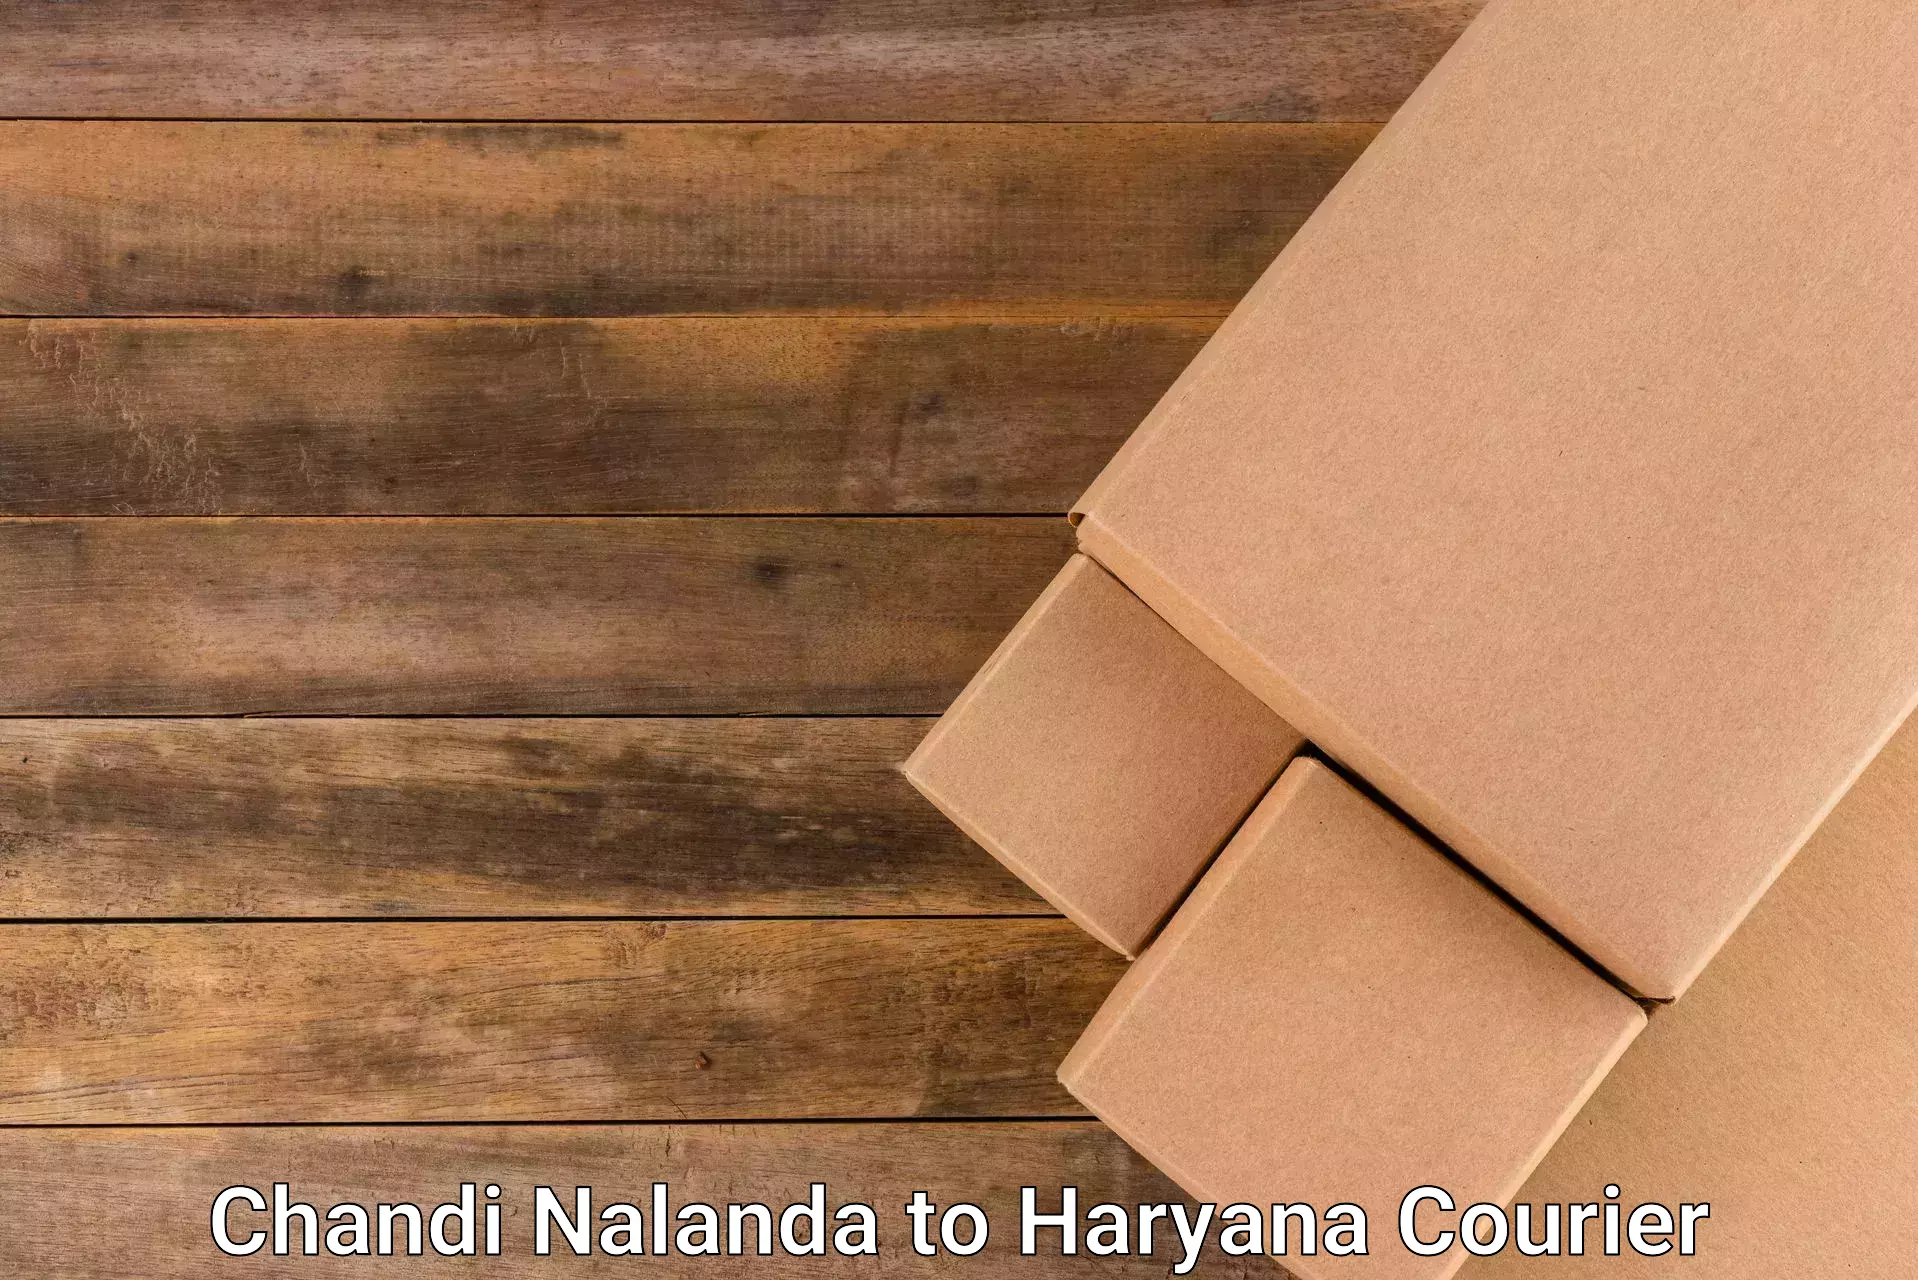 International courier networks Chandi Nalanda to Chandi Rohtak